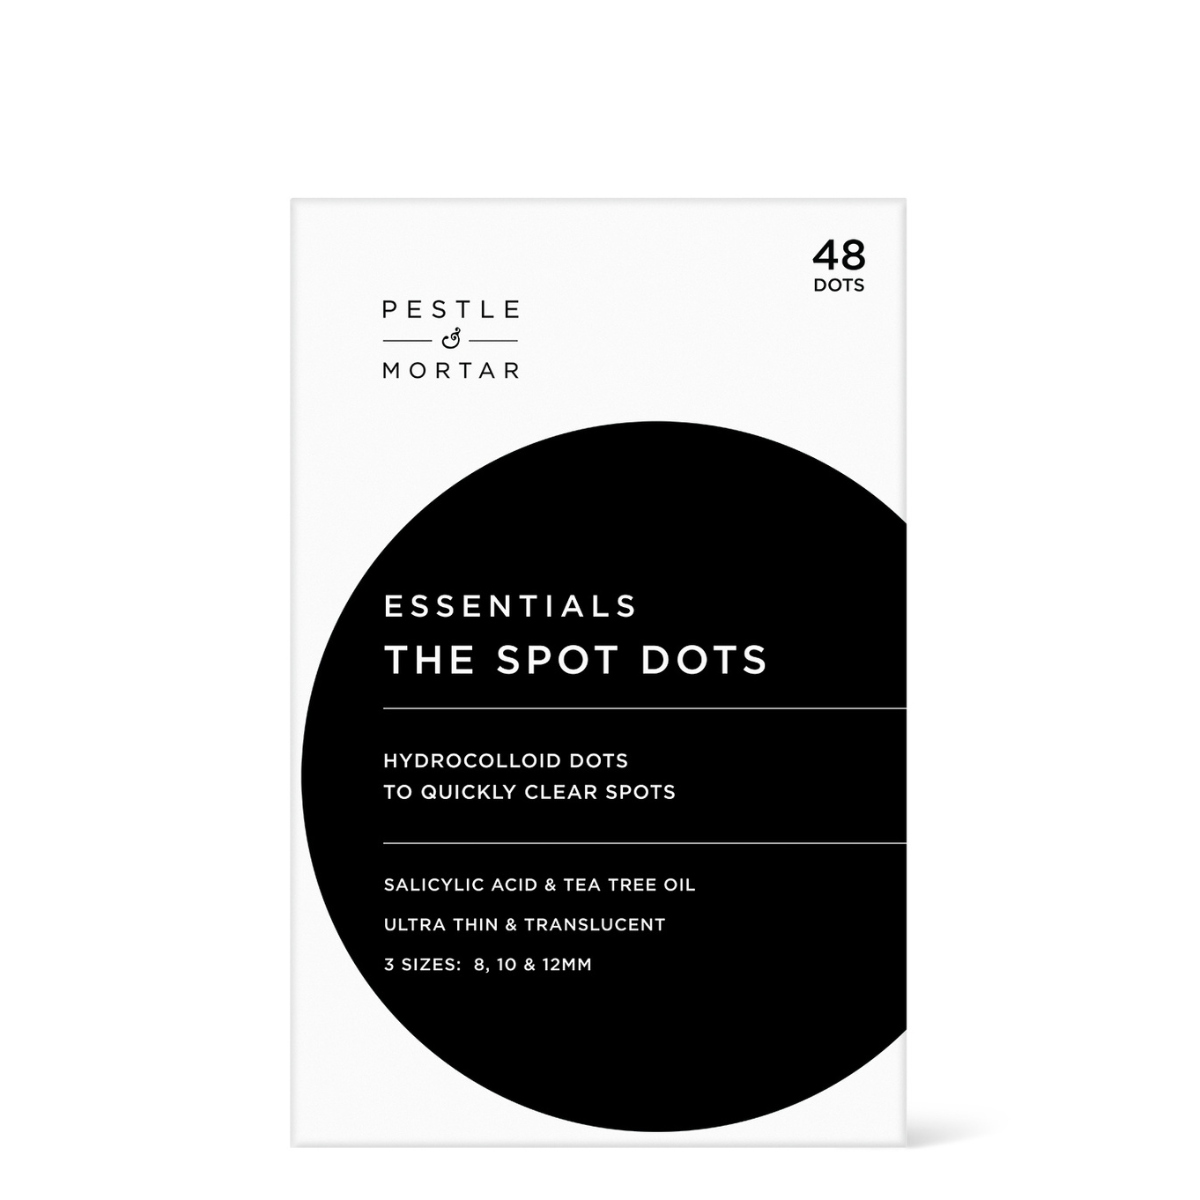 Pestle Mortar Essentials - The Spot Dots - 48 Dots